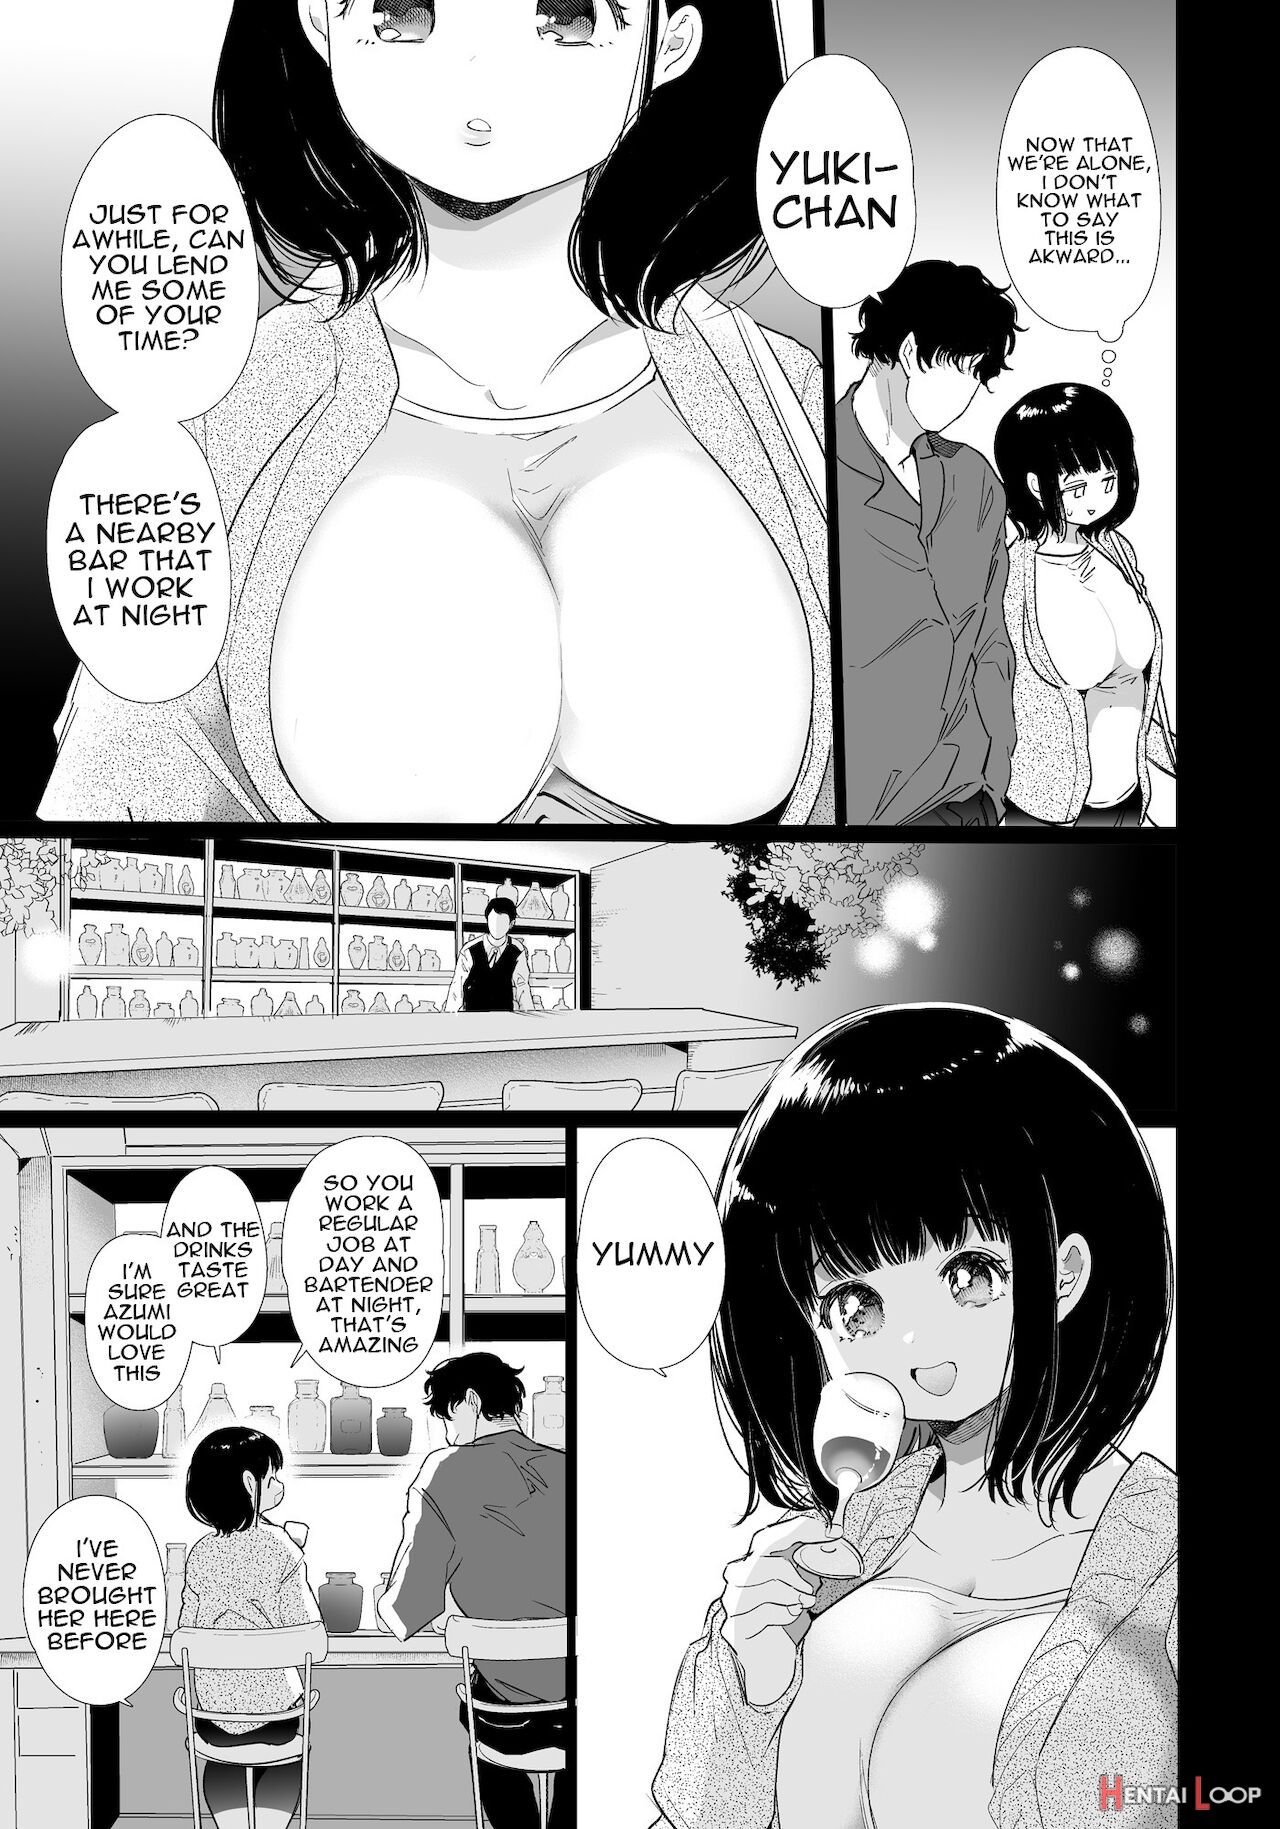 Yuki-chan Ntr page 8